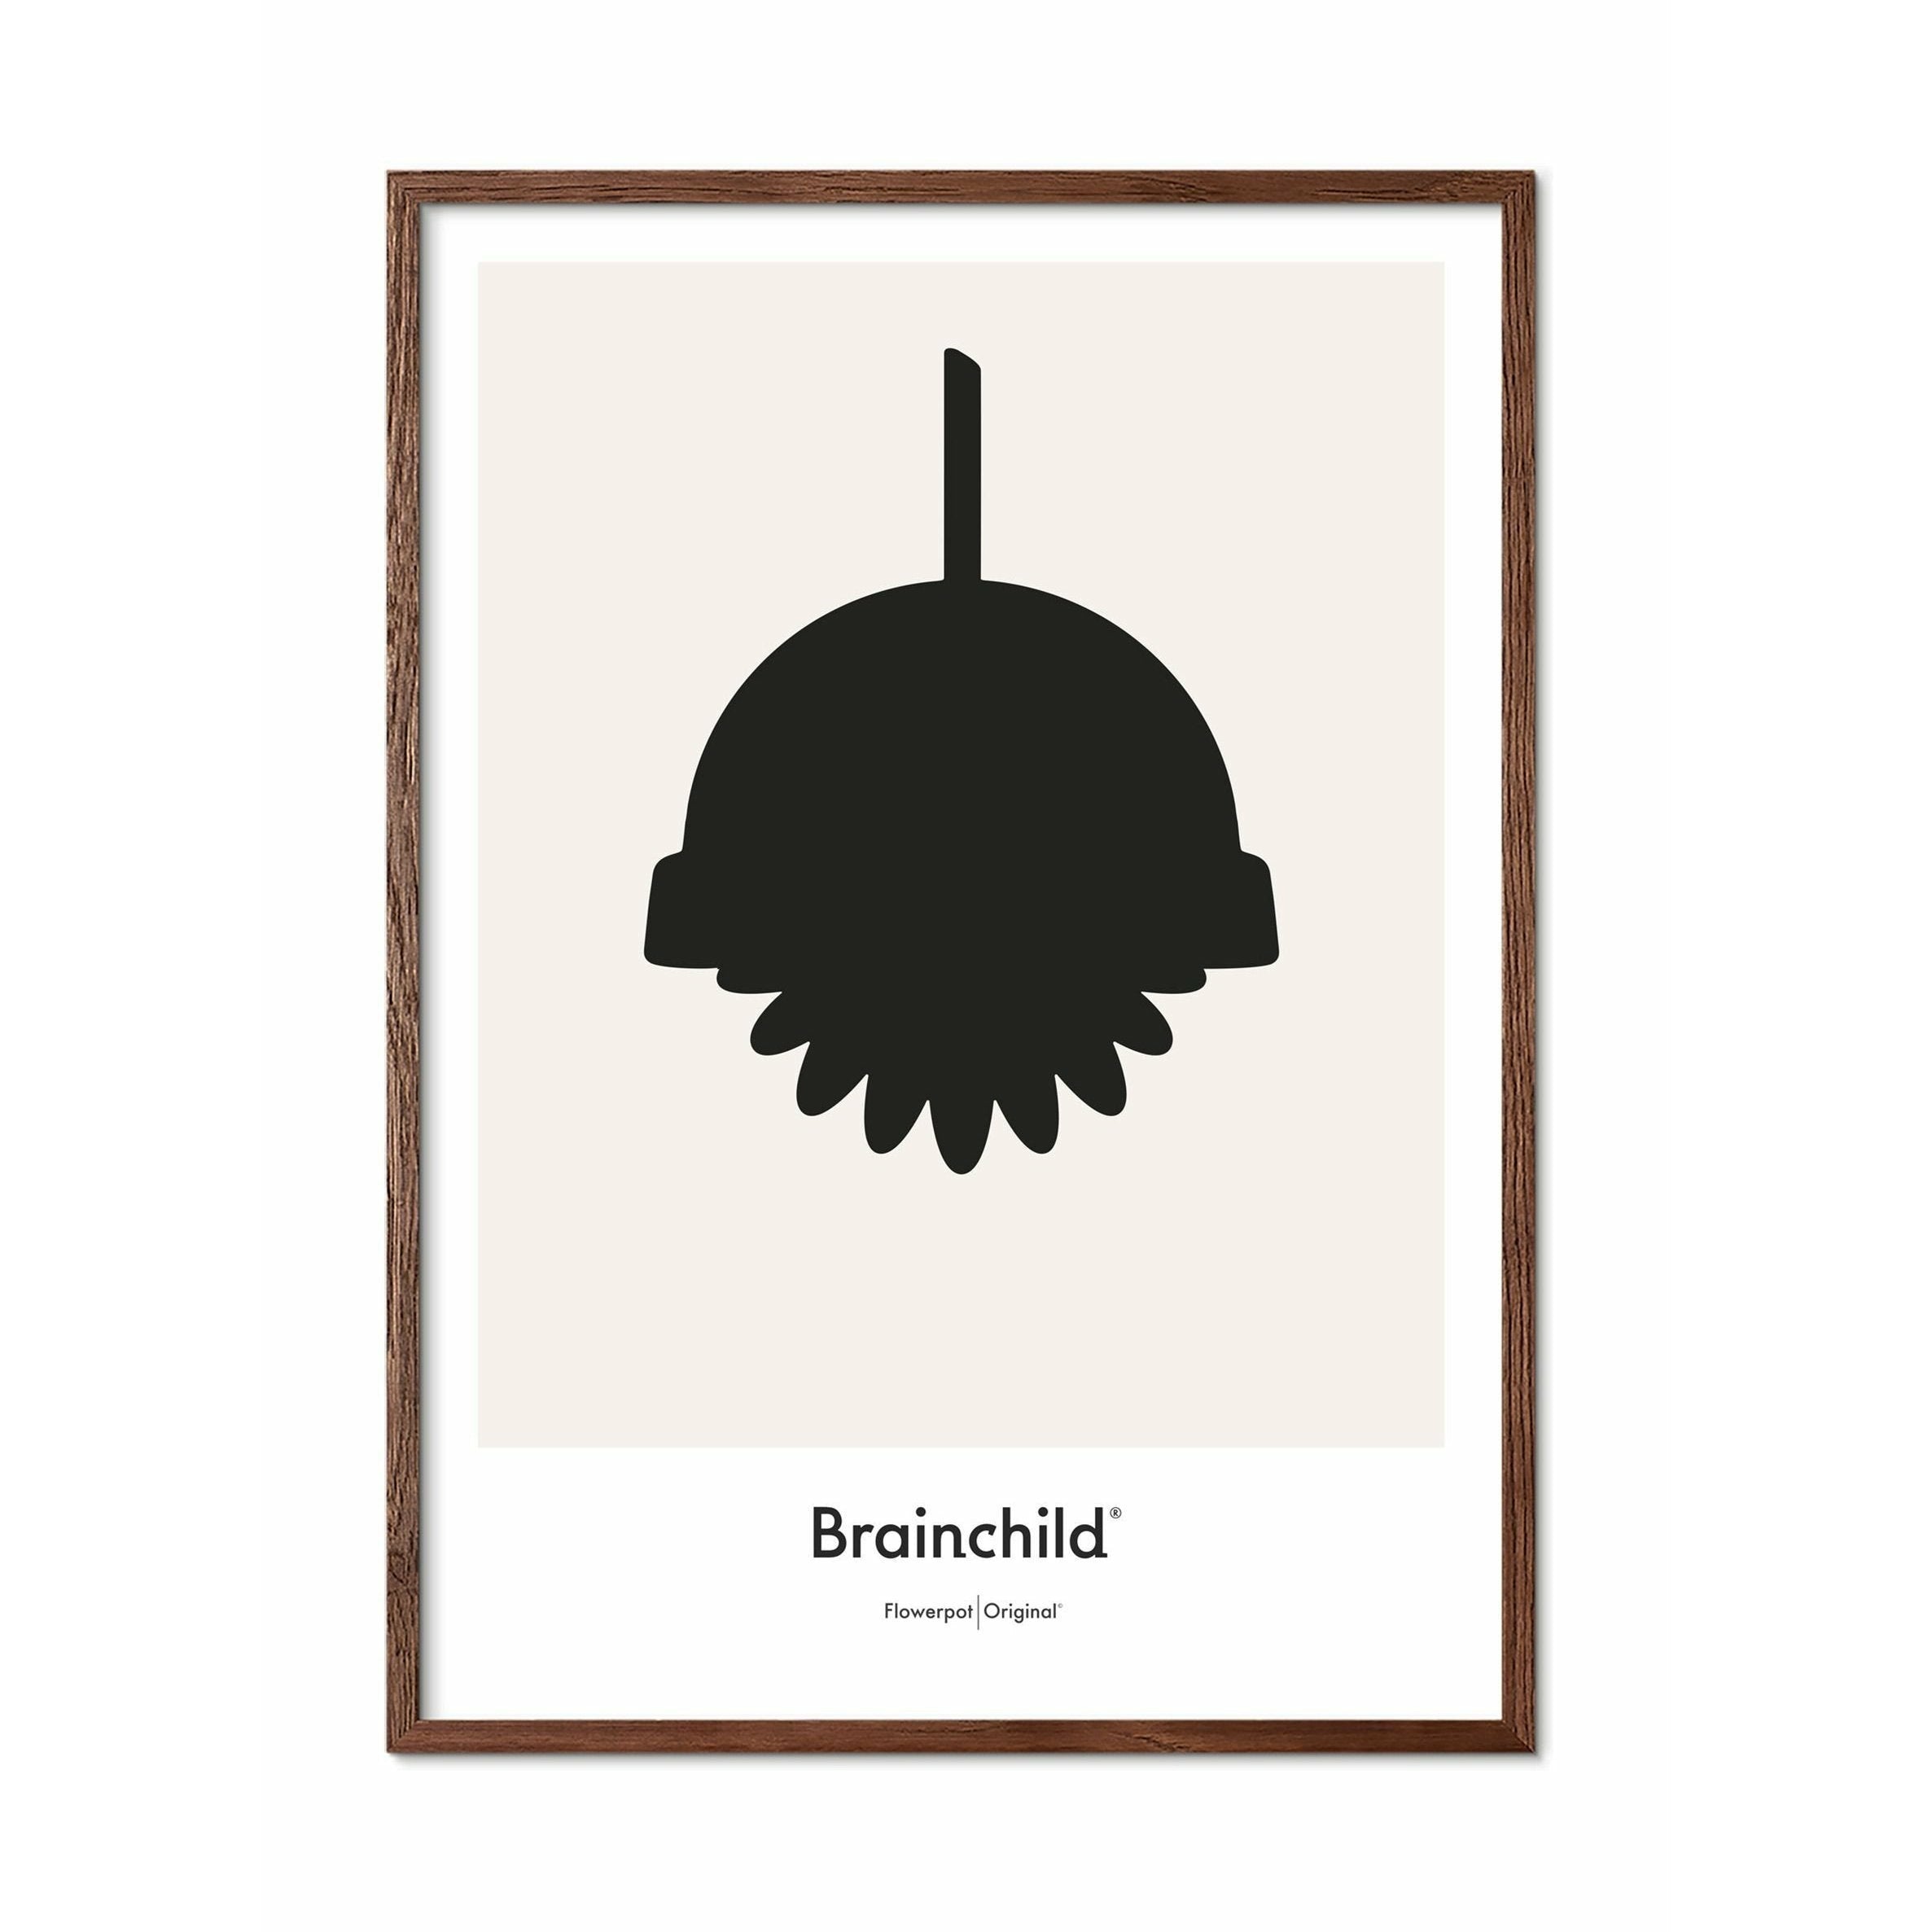 Brainchild Flowerpot Design Icon Poster, Dark Wood Frame A5, Grey